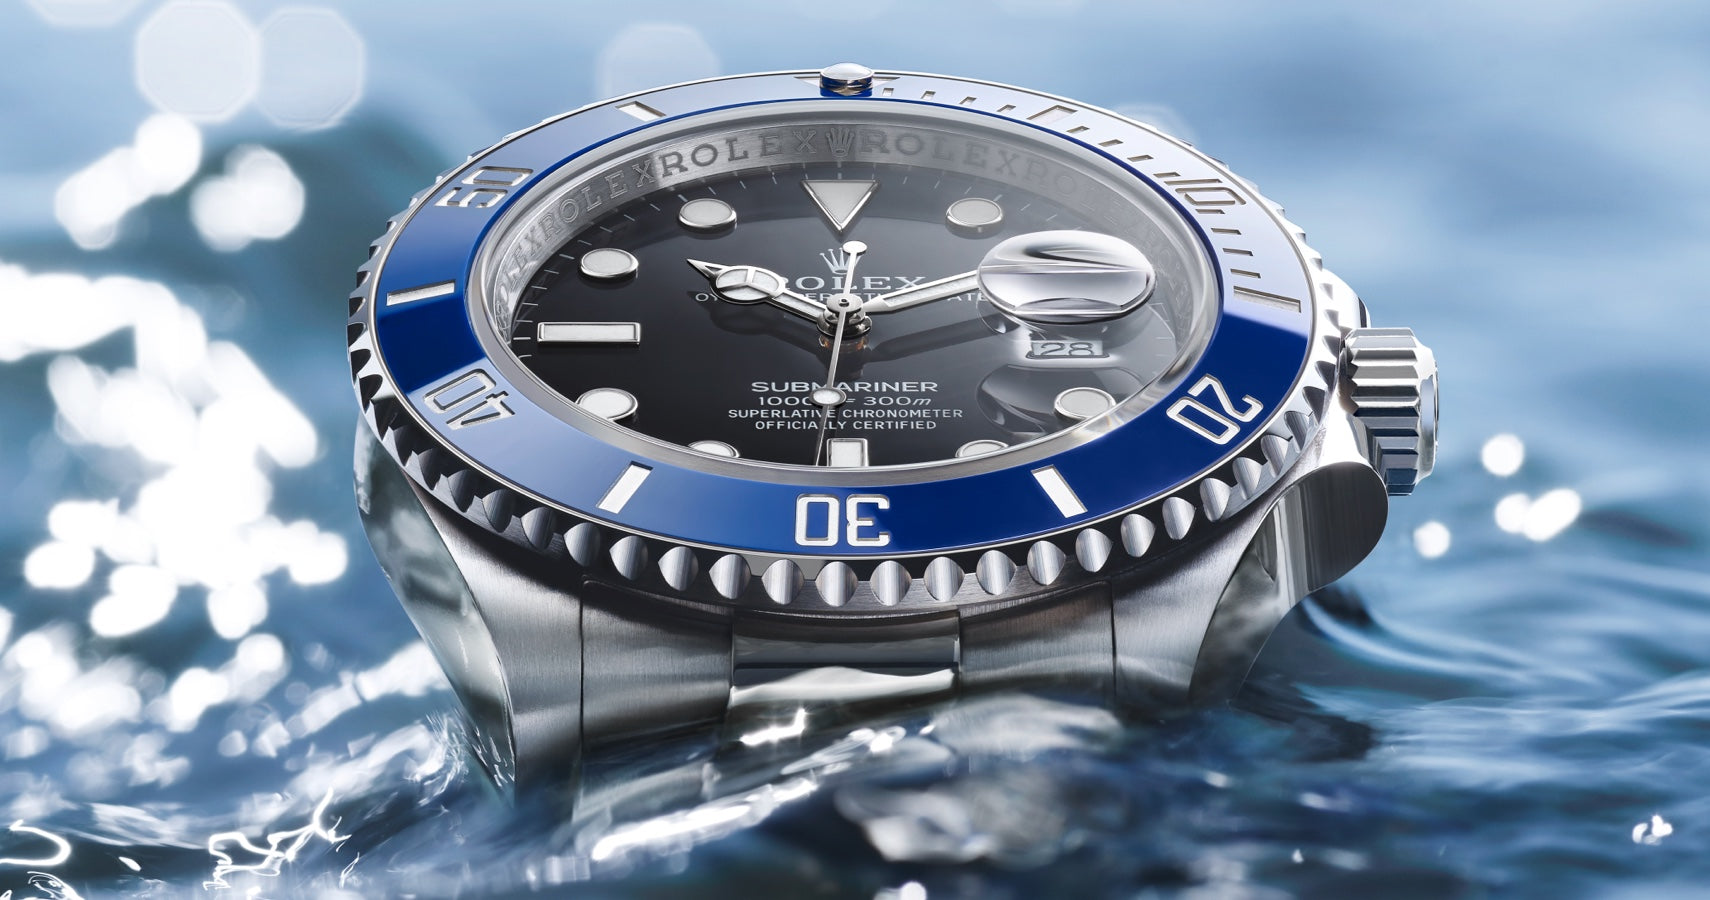 Blue Bezel Detail on Rolex Submariner in Water